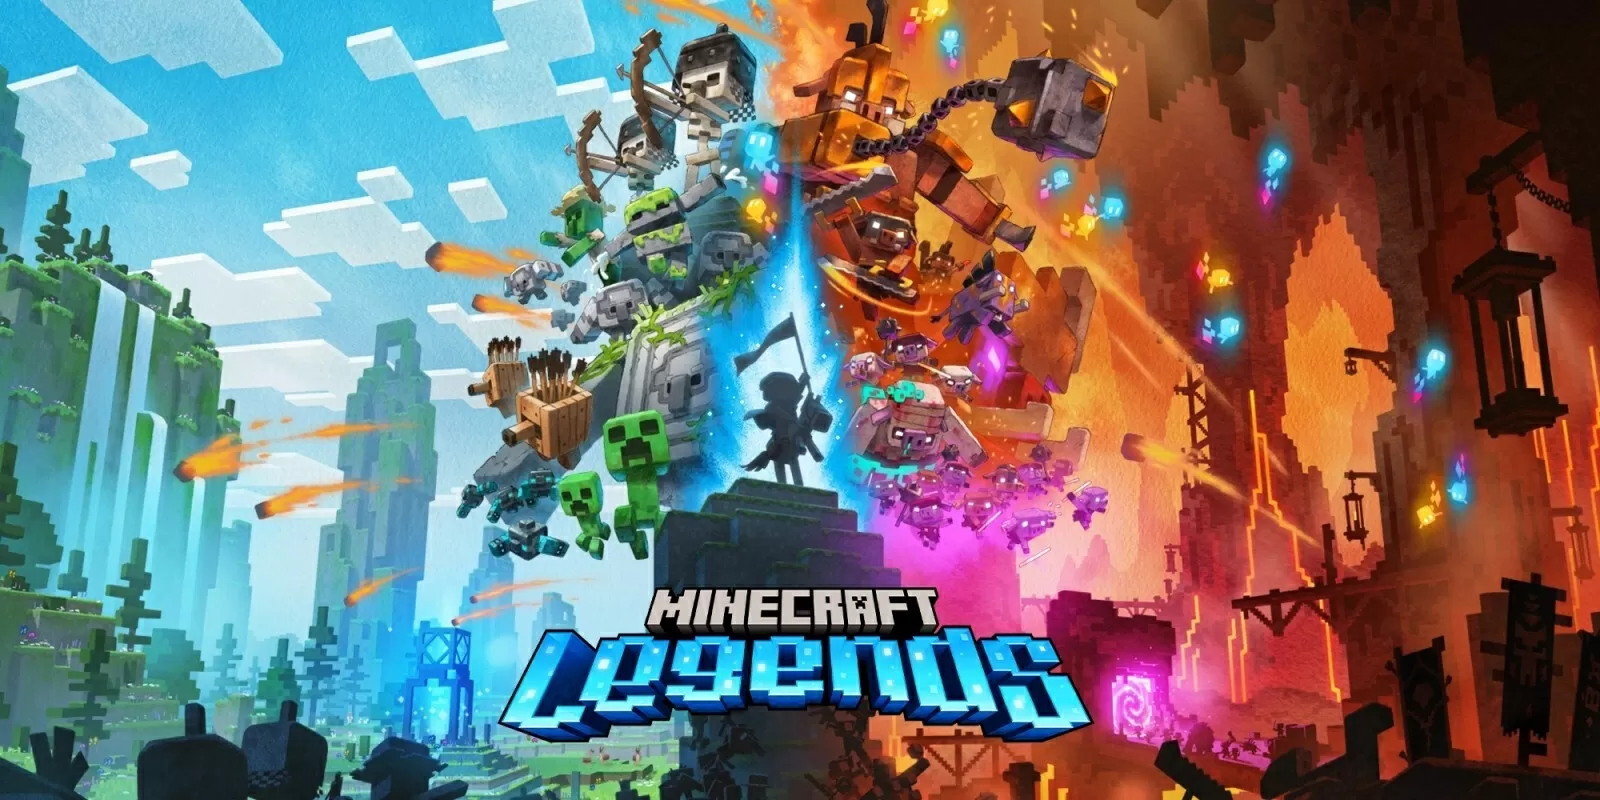 2x1 N Switch Minecraft Legends image1600w